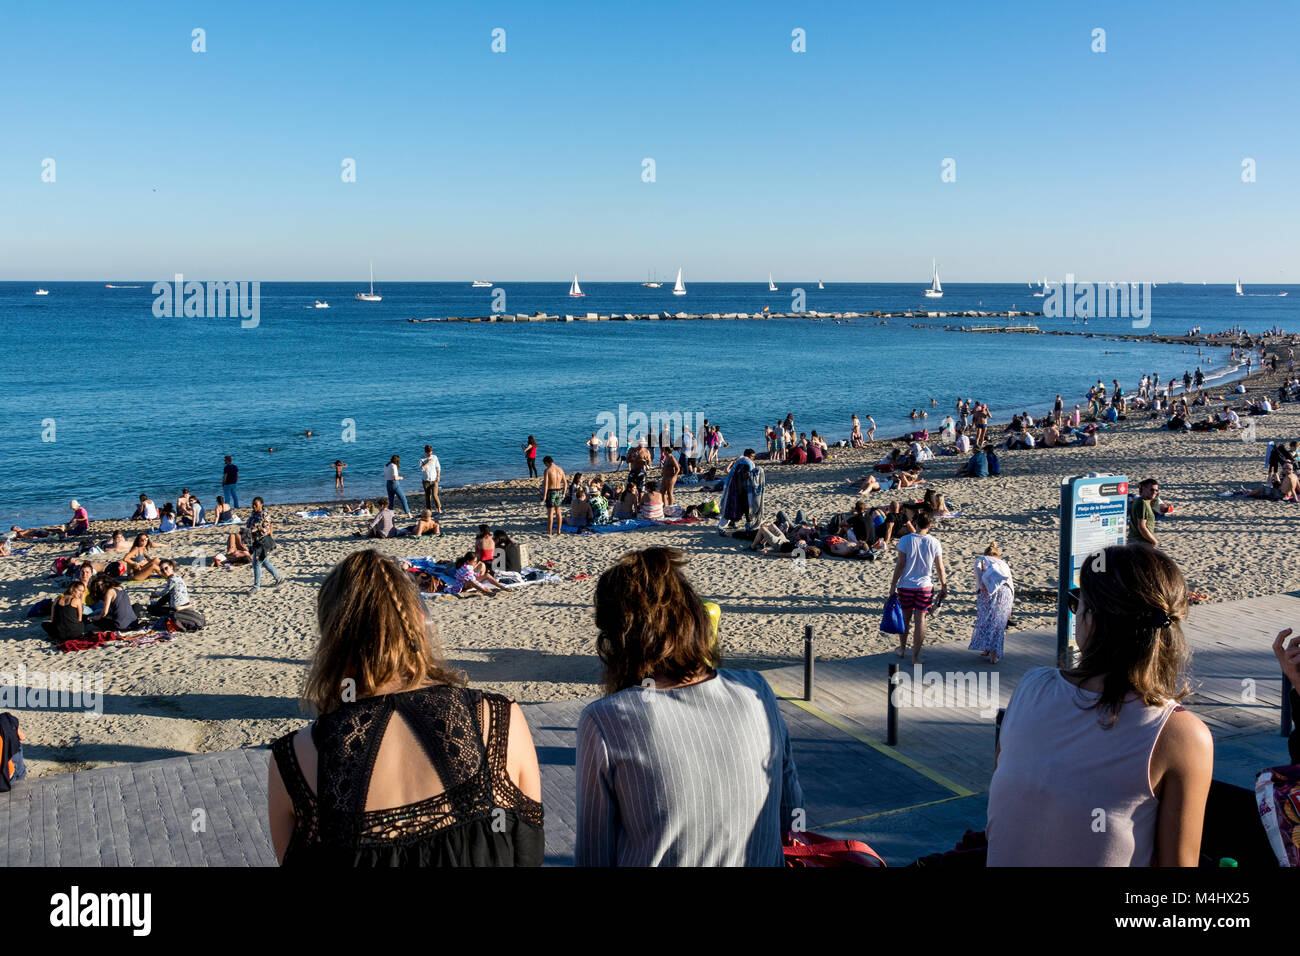 Strand von Barcelona an einem gut besuchten Sonntag im Herbst mit vielen Spaziergängern und Badenden Stock Photo